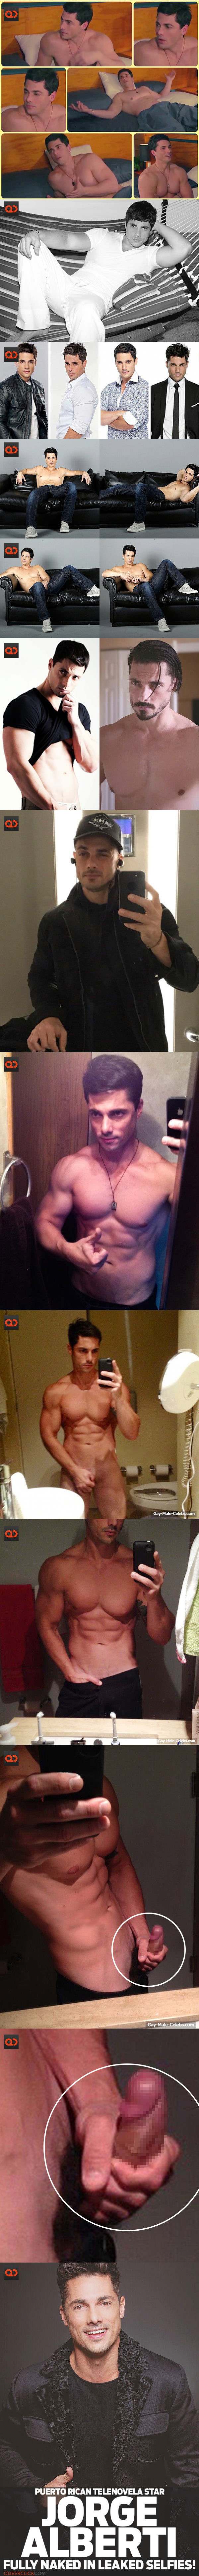 Jorge Alberti, Puerto Rican Telenovela Star, Fully Naked In Leaked Selfies!